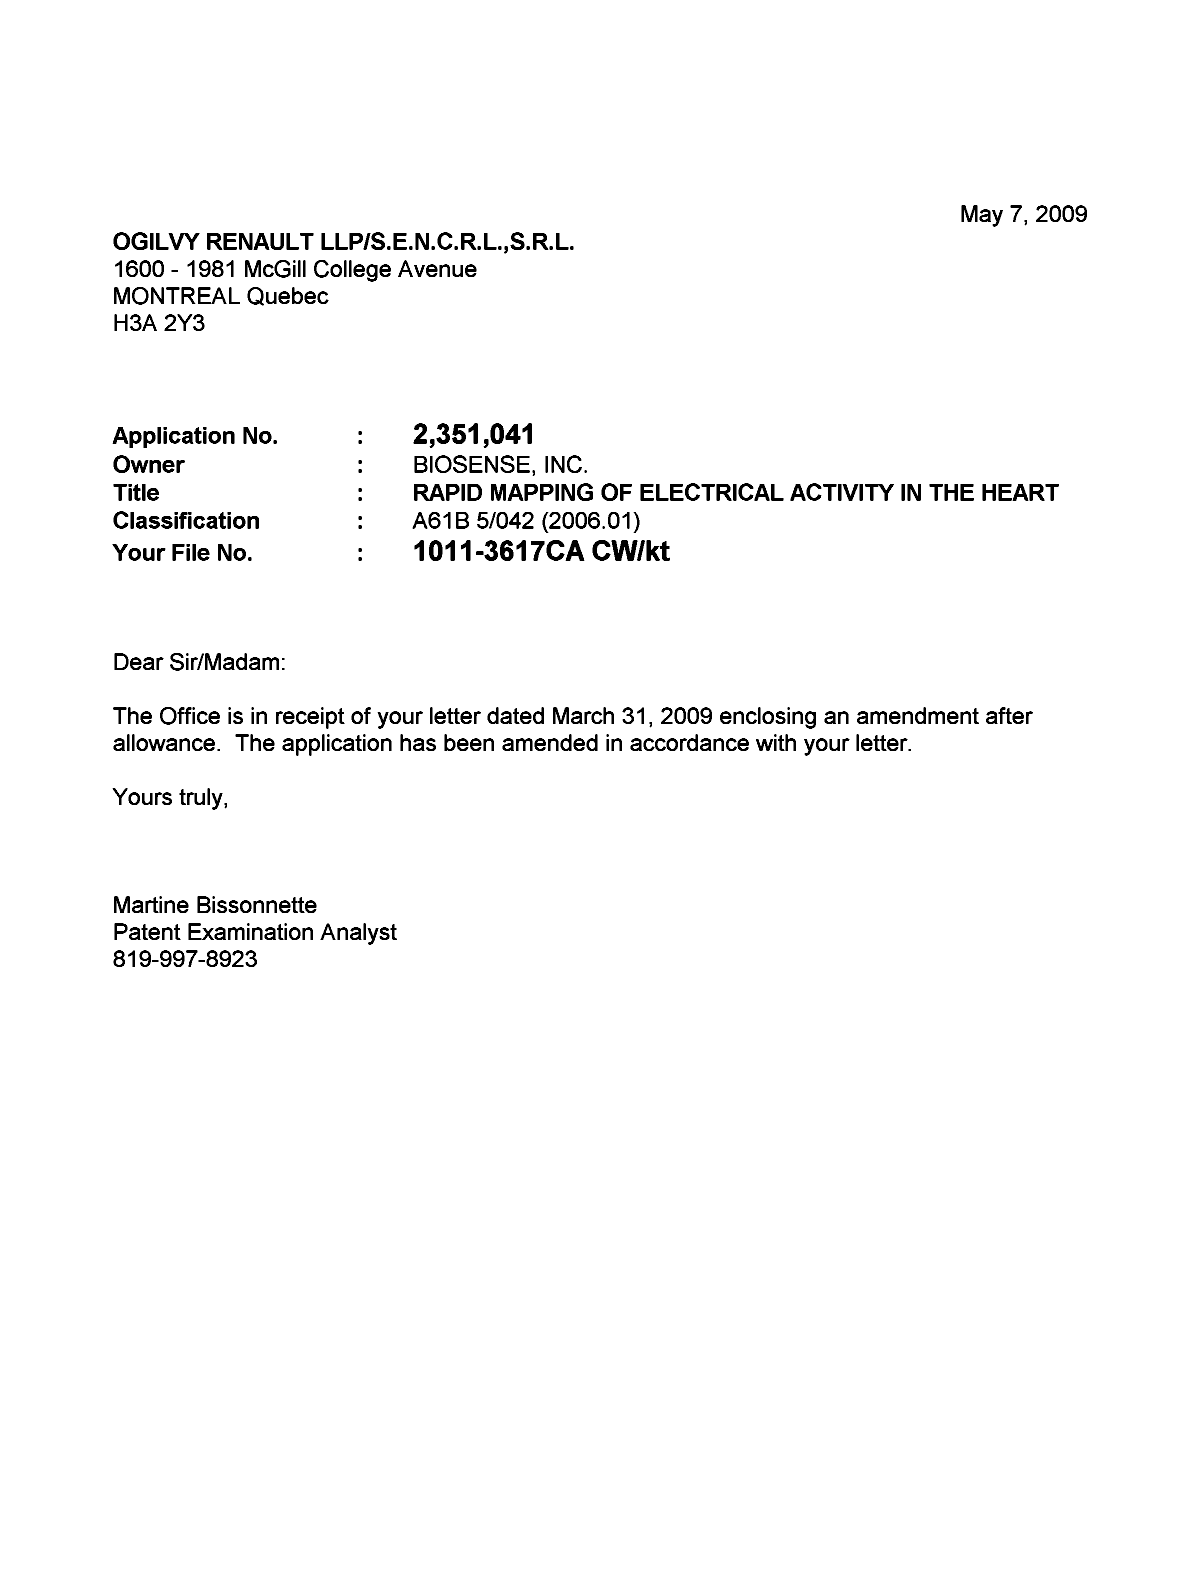 Document de brevet canadien 2351041. Poursuite-Amendment 20090507. Image 1 de 1